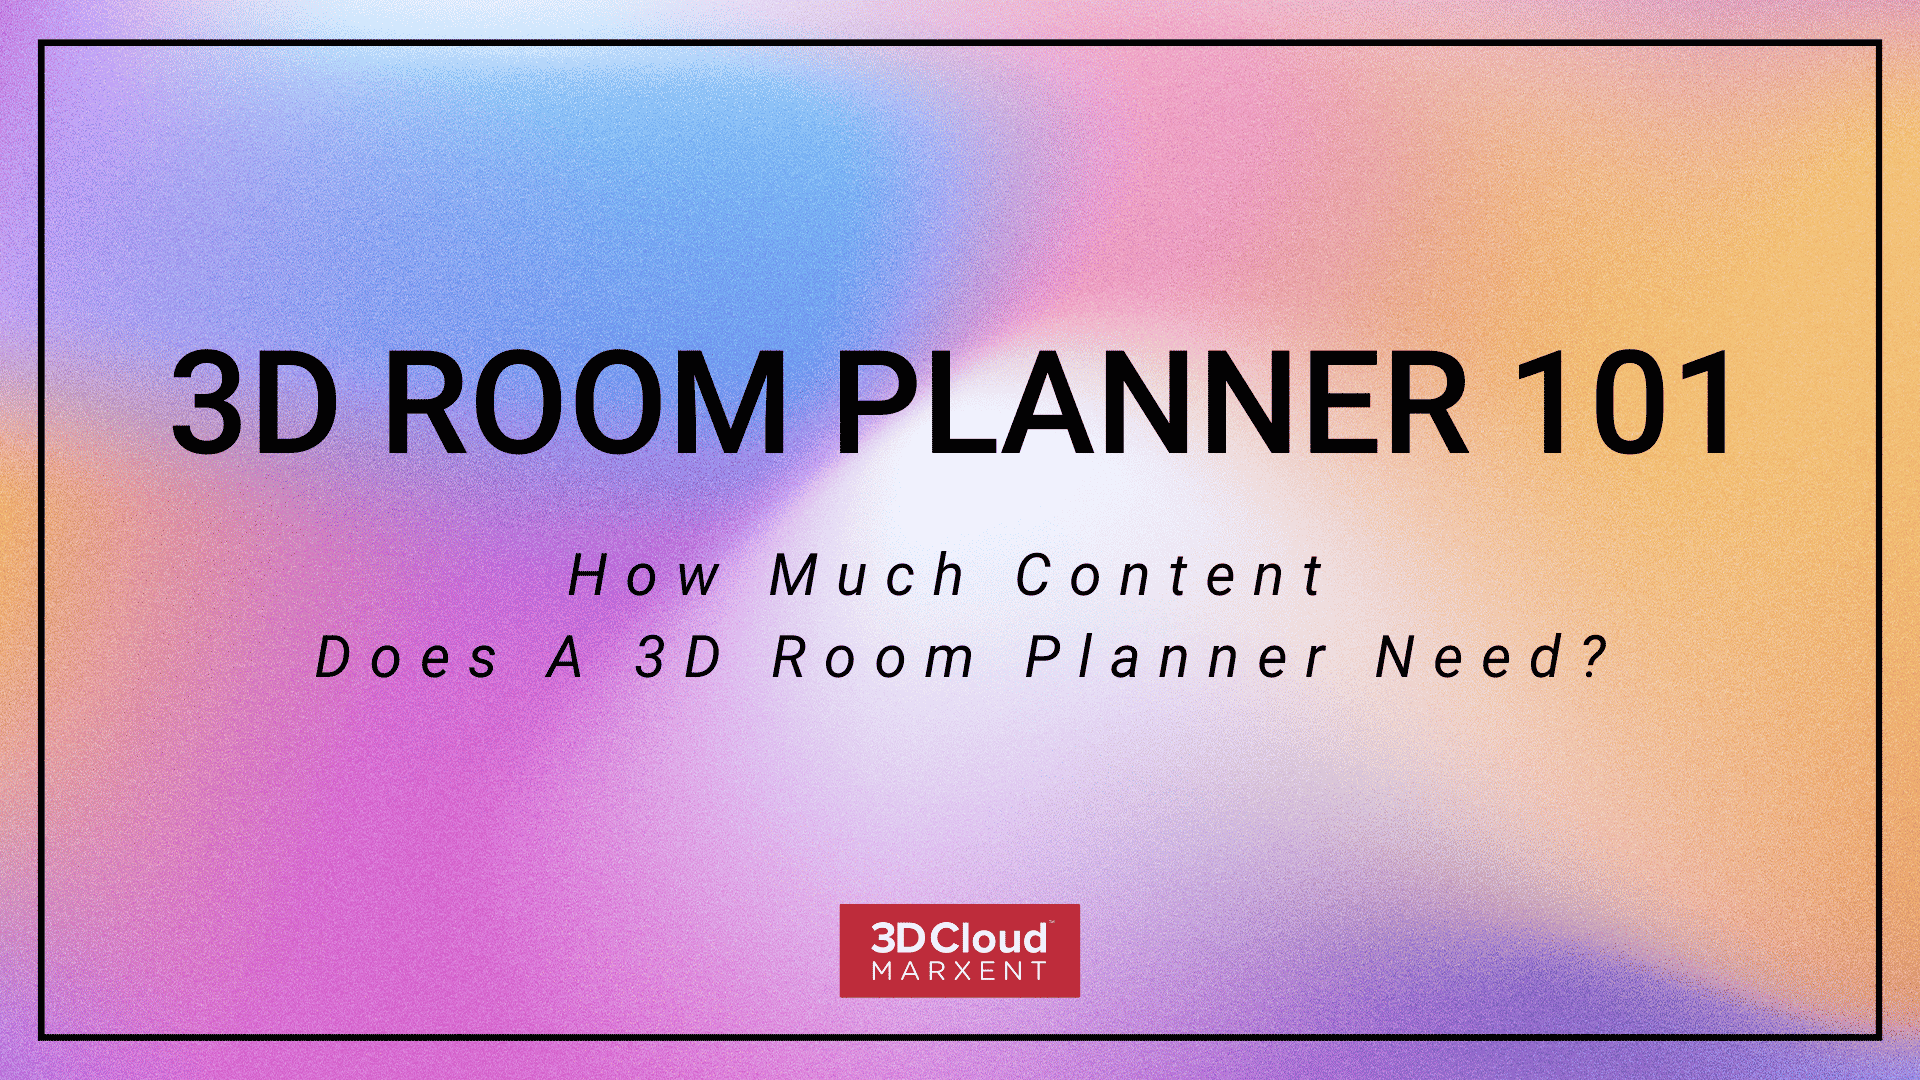 3D Room Planner 101 Social Share